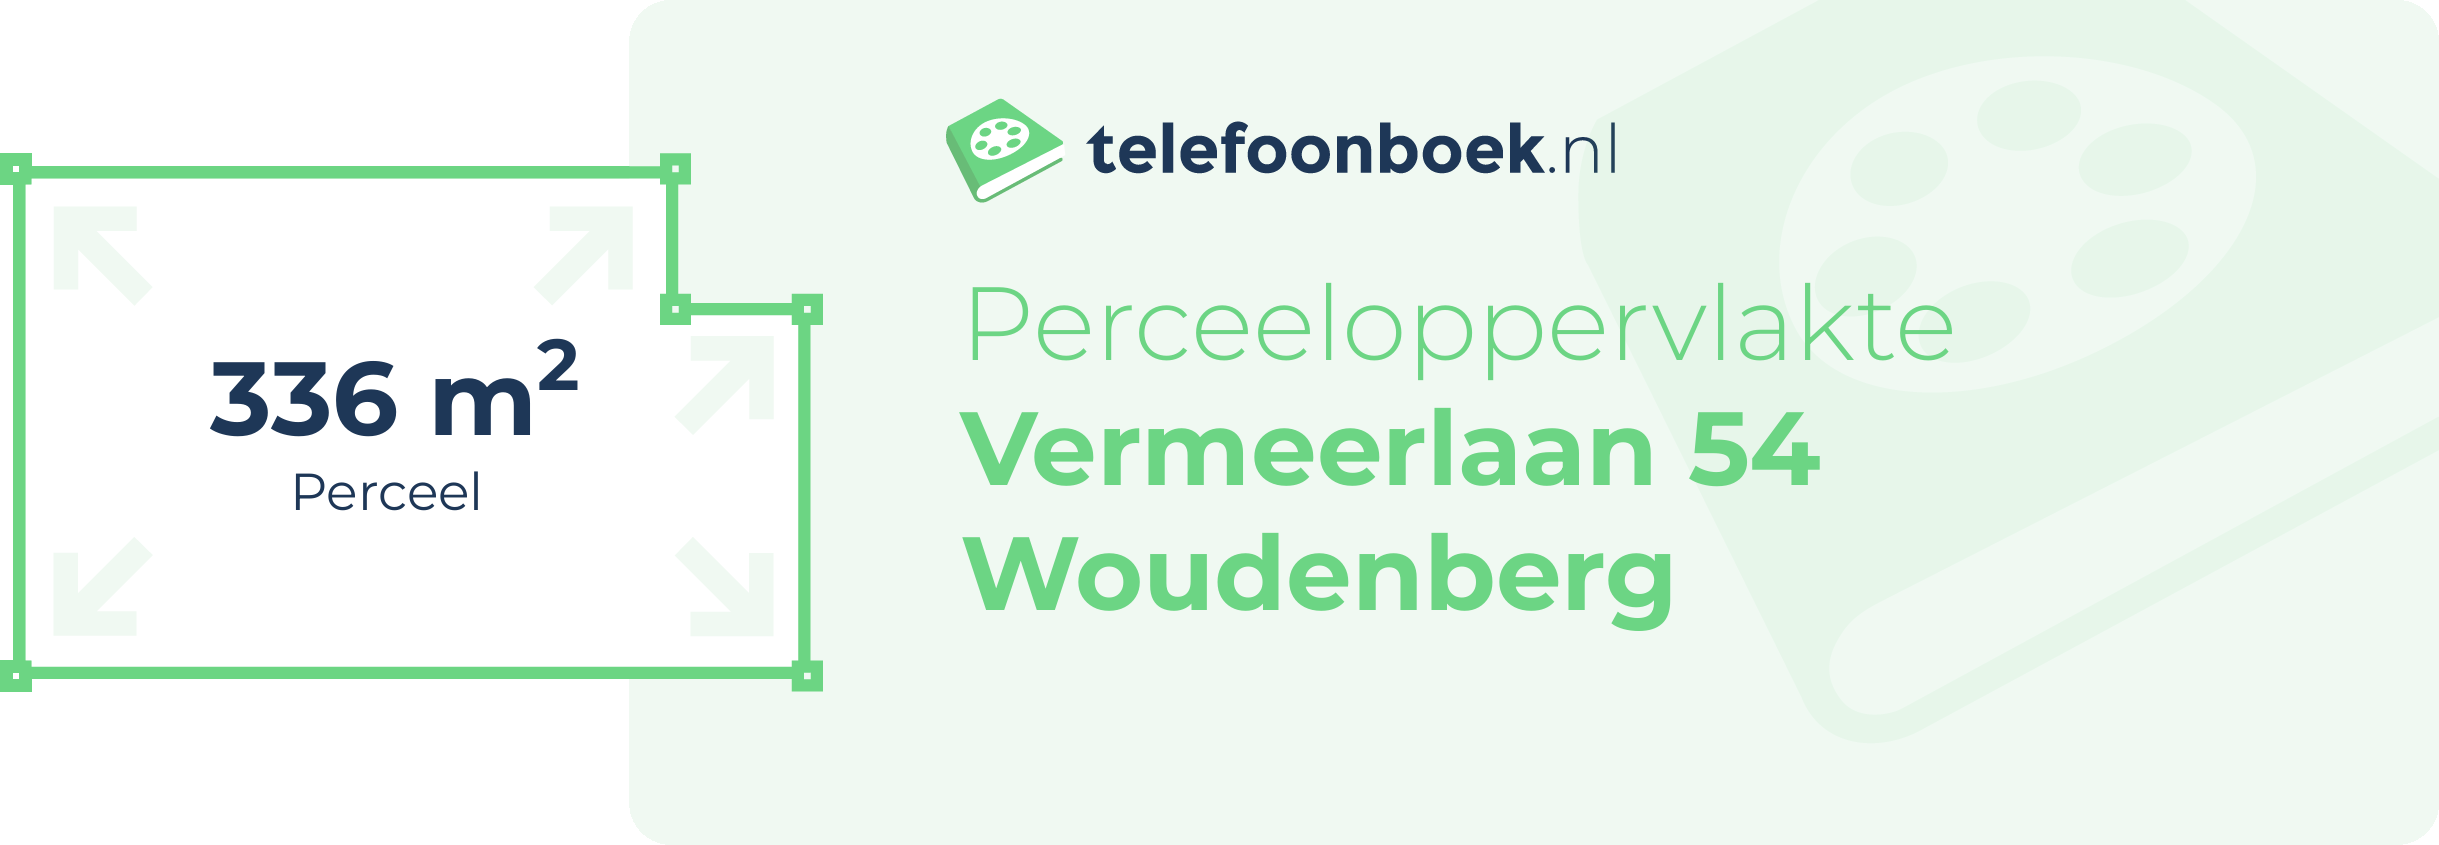 Perceeloppervlakte Vermeerlaan 54 Woudenberg